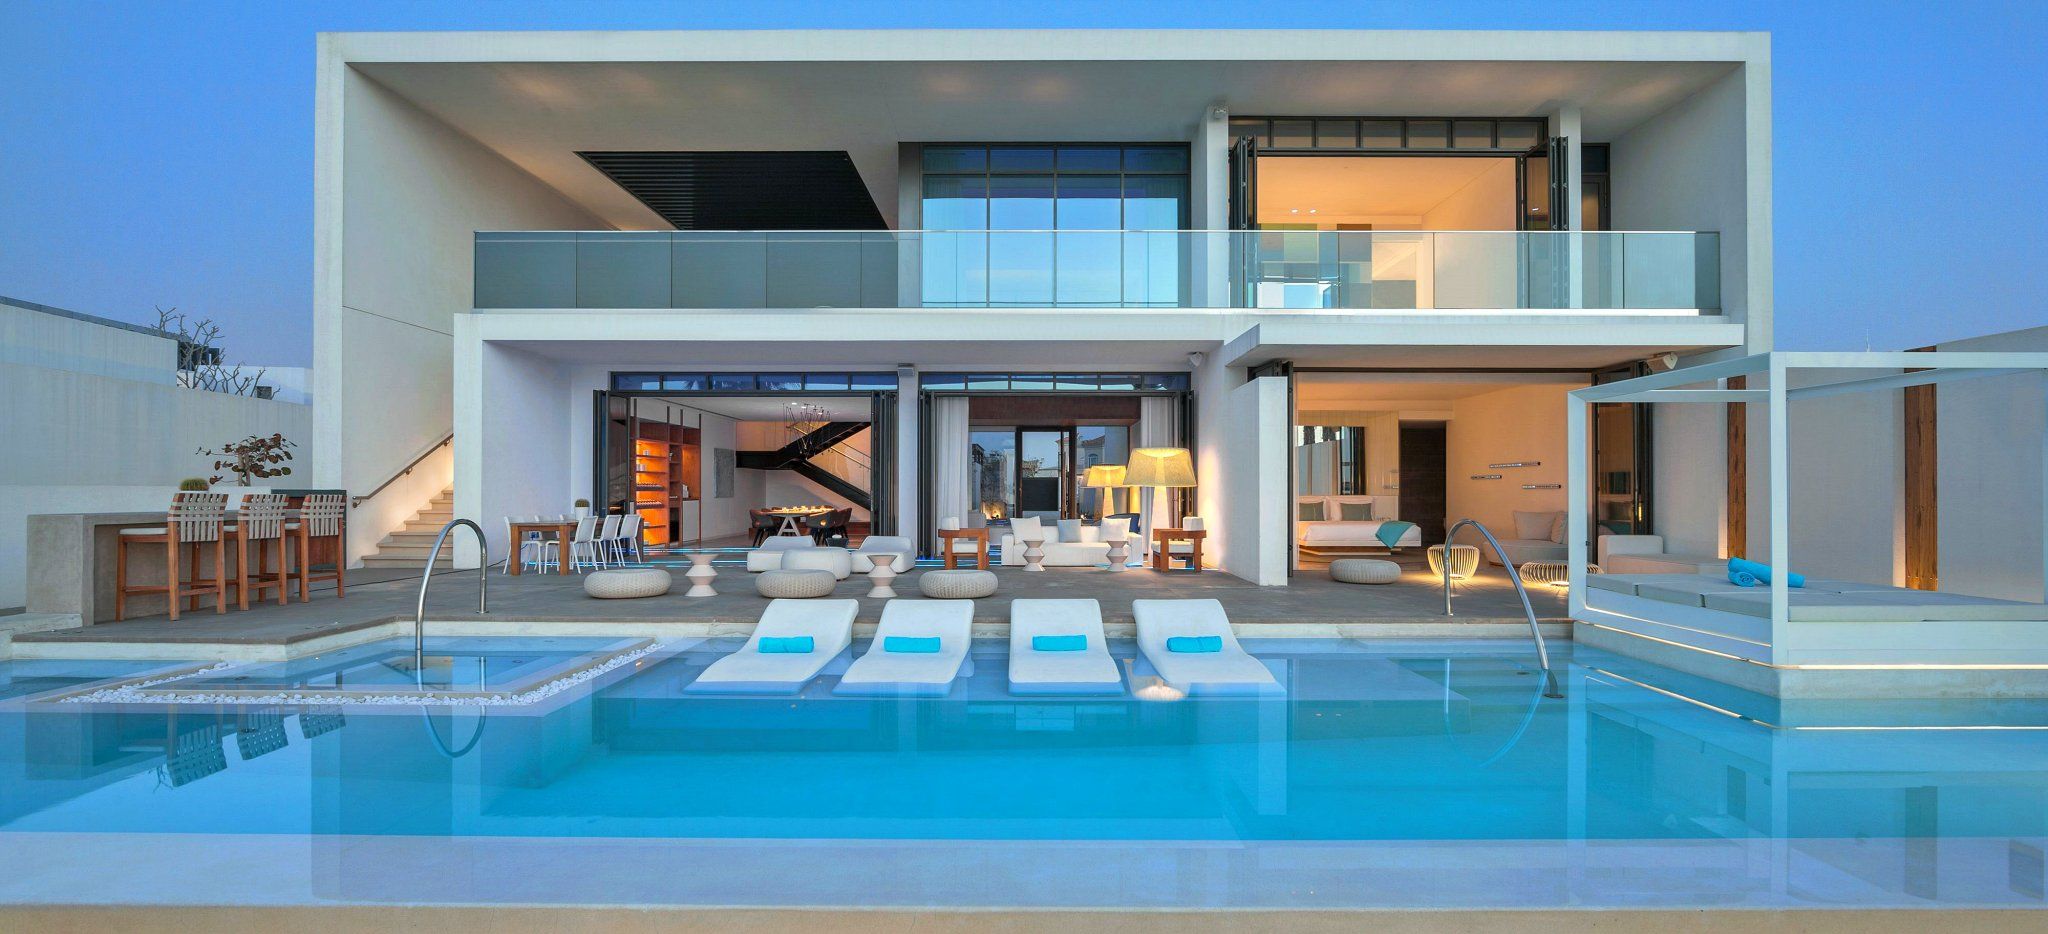 Eine Riesige Villa als Hotelzimmer, ganz in weiß mit privatem Pool, im Hote Nikki Beach Dubai